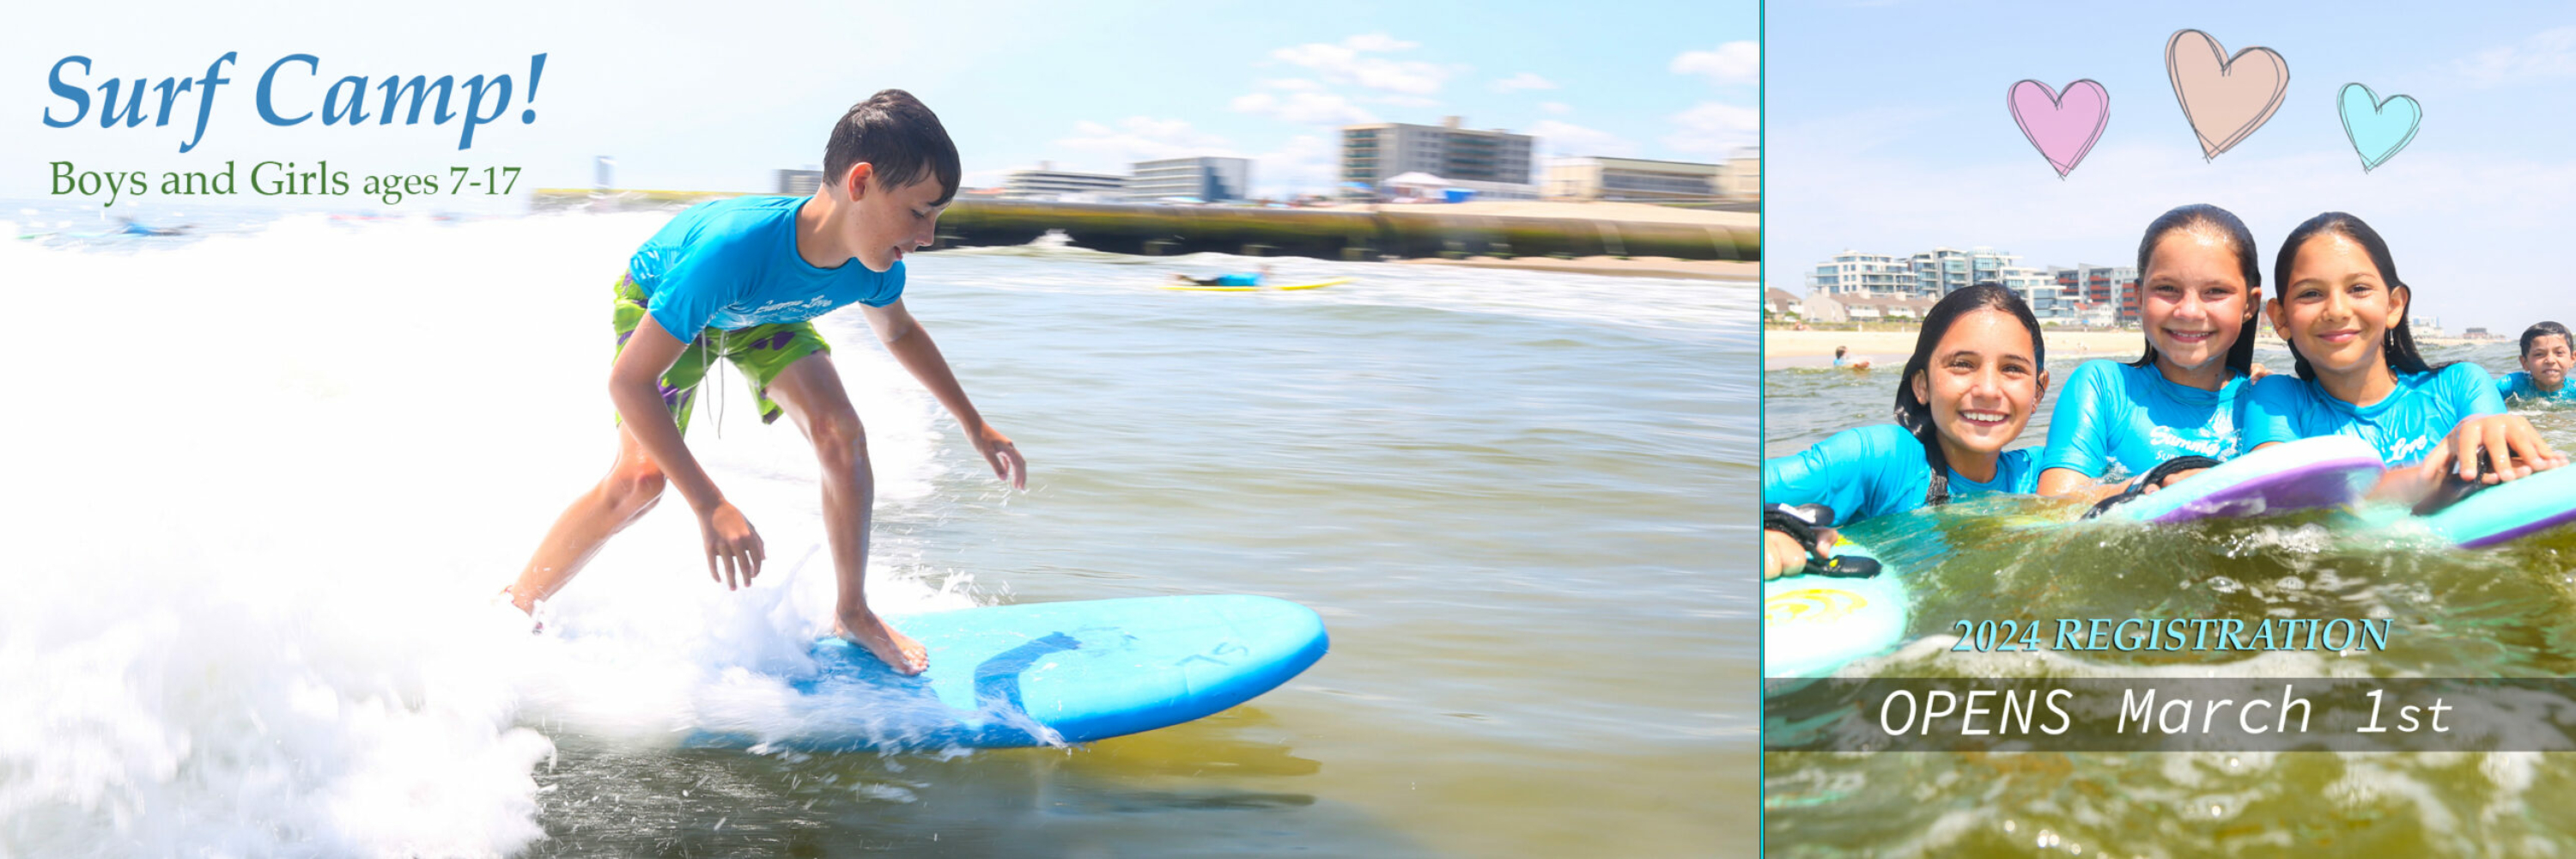 NJ Surf Camp, Surf Lessons, Kids surf camp, Summer camps